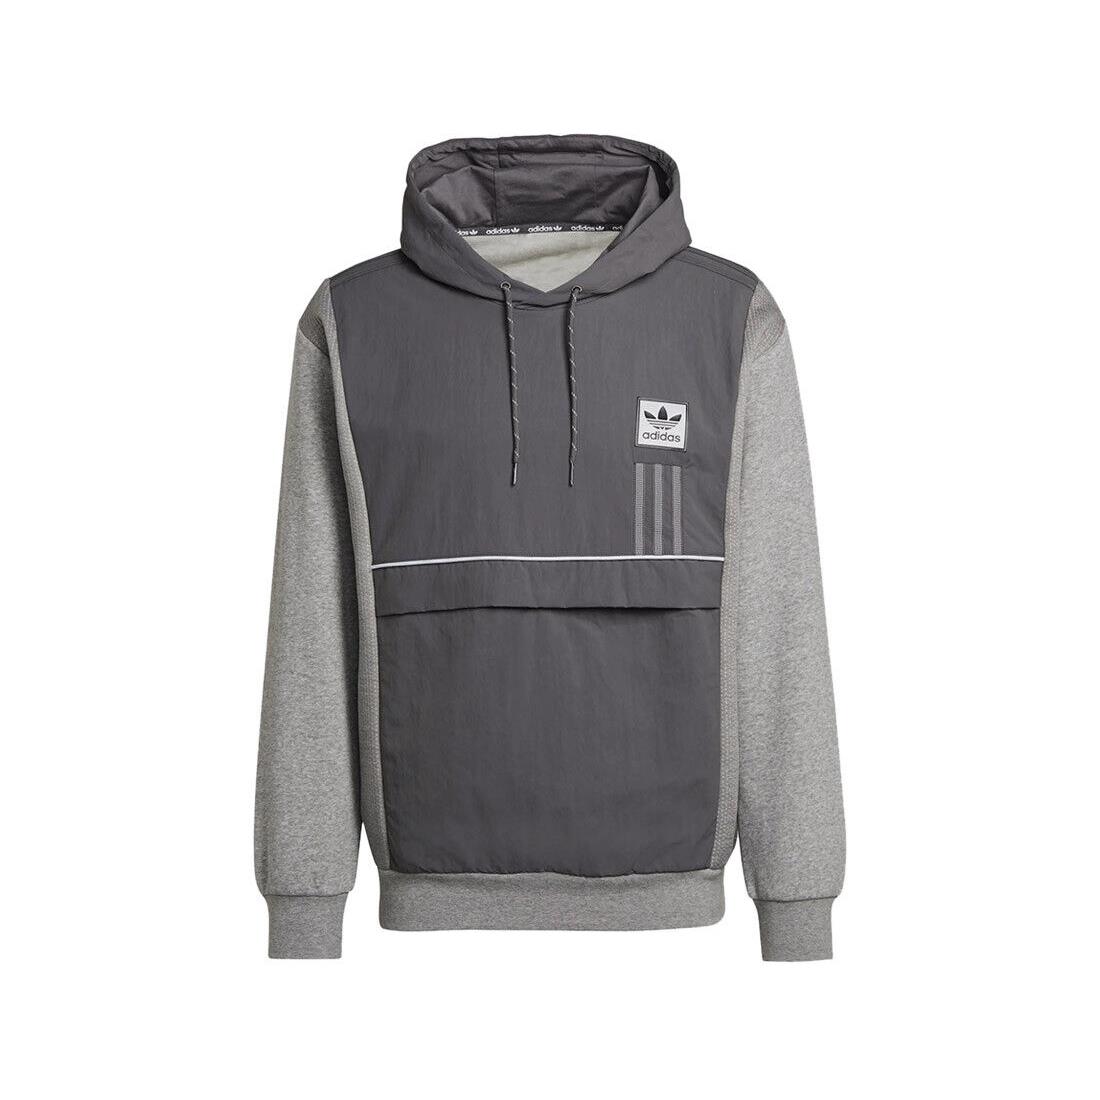 Adidas Originals ID96 Mens Active Hoodies Size L Color: Grey/dark Grey